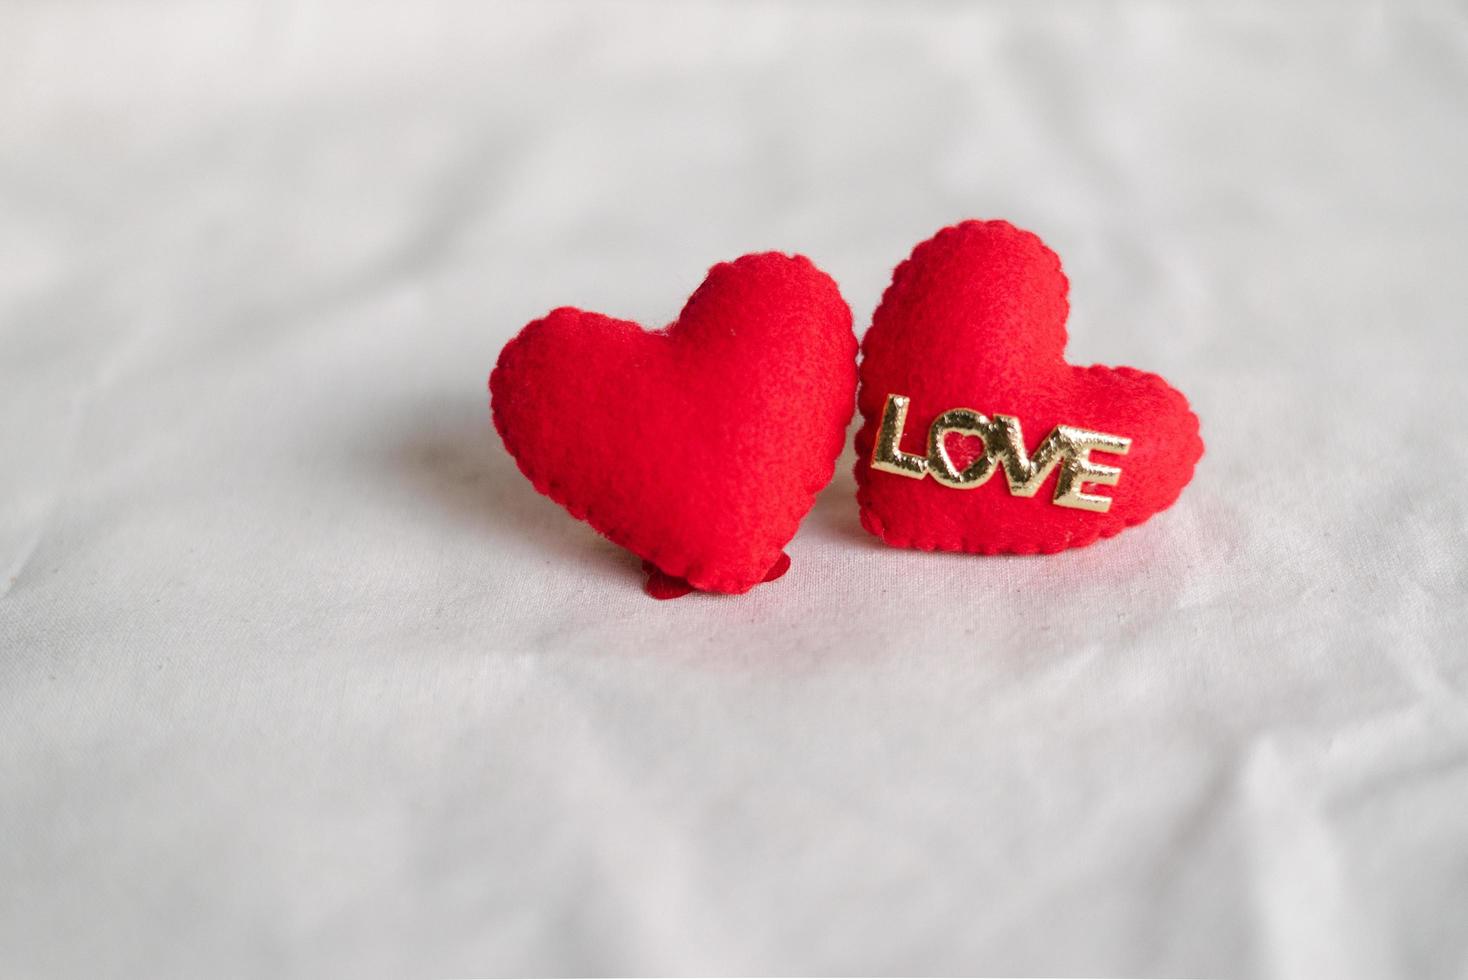 amor corazones sobre fondo de textura de algodón. concepto de tarjeta de San Valentín. corazón para el fondo del día de san valentín. foto